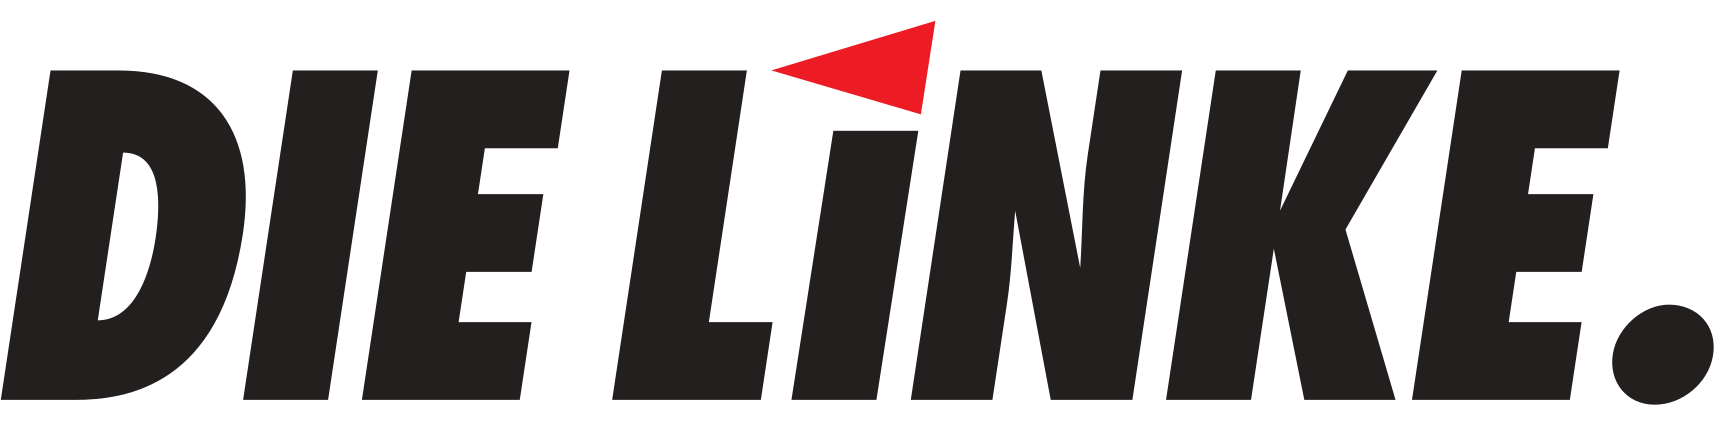 Die Linke (Logo) - Die Linkspartei bei der Bundestagswahl